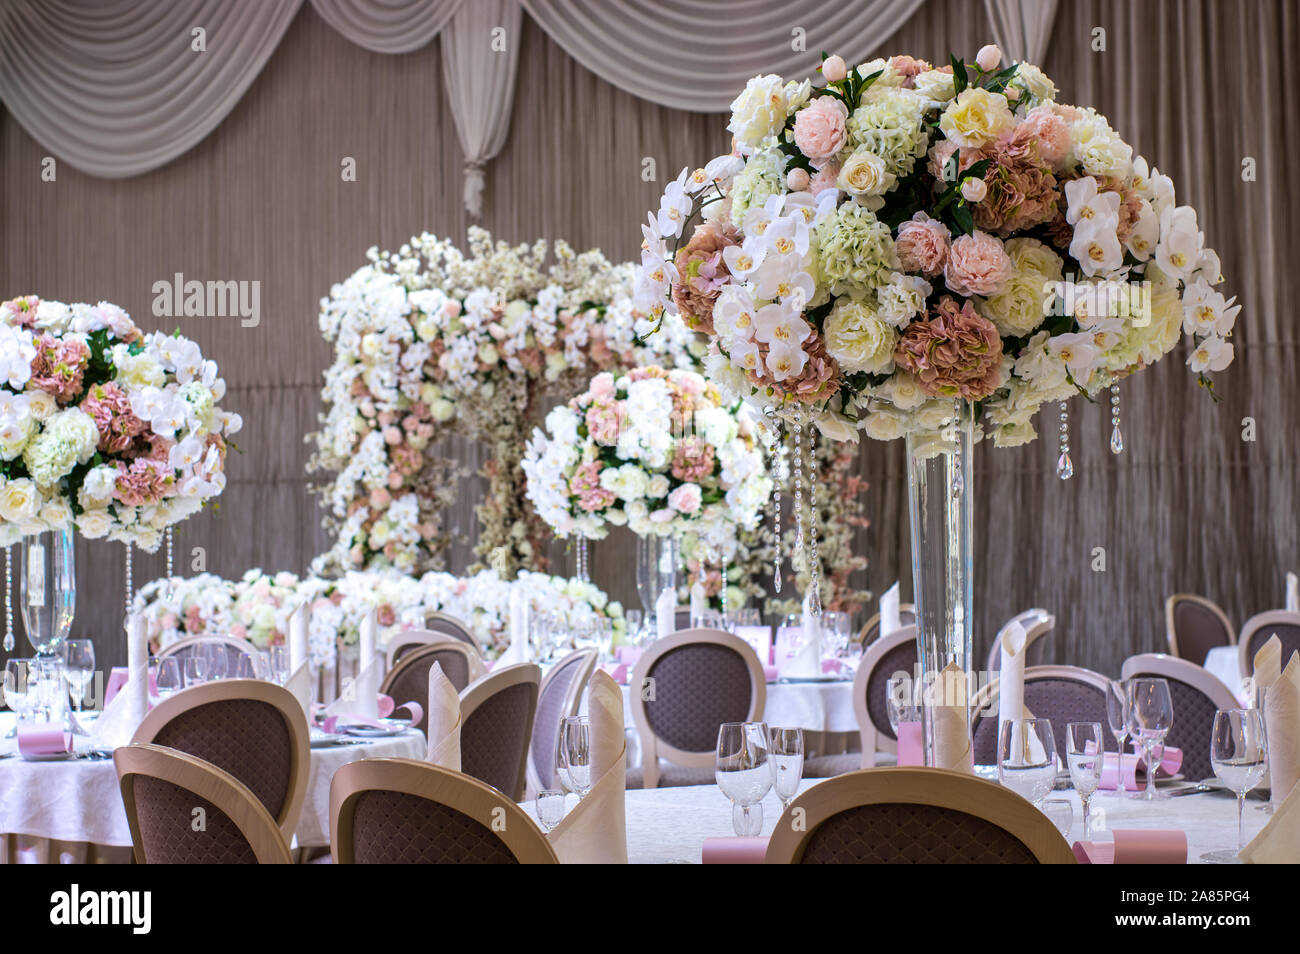 Décorations de table de mariage avec des roses blanches et bois Banque D'Images